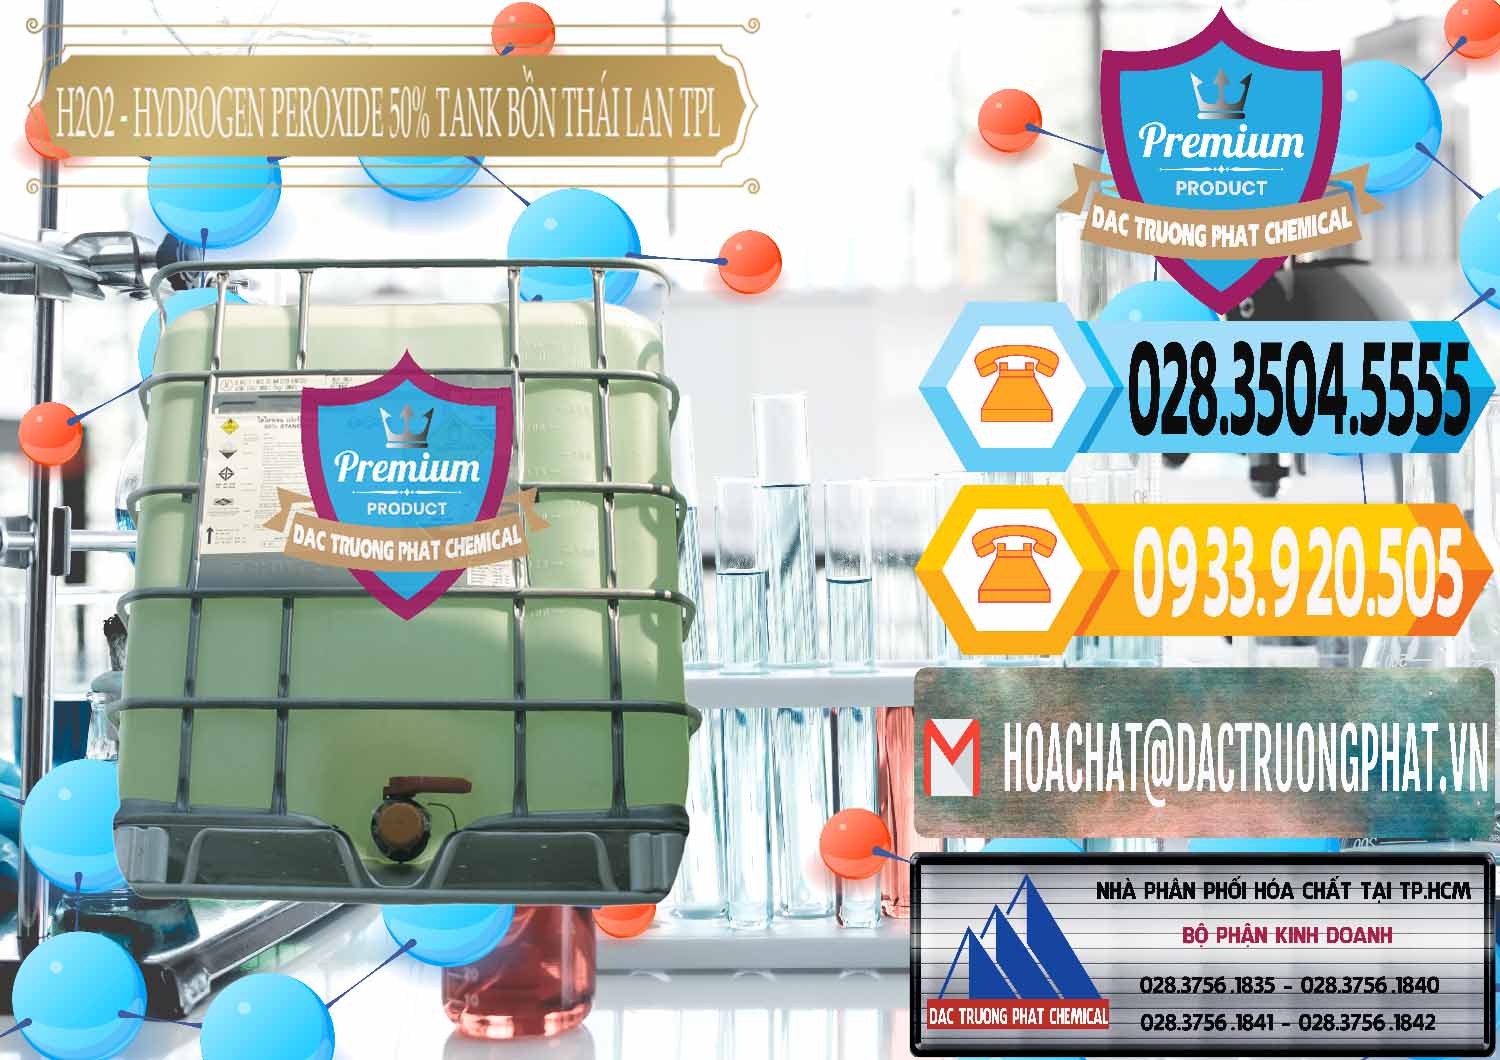 Nơi kinh doanh ( bán ) H2O2 - Hydrogen Peroxide 50% Tank IBC Bồn Thái Lan TPL - 0073 - Đơn vị cung cấp & kinh doanh hóa chất tại TP.HCM - hoachattayrua.net